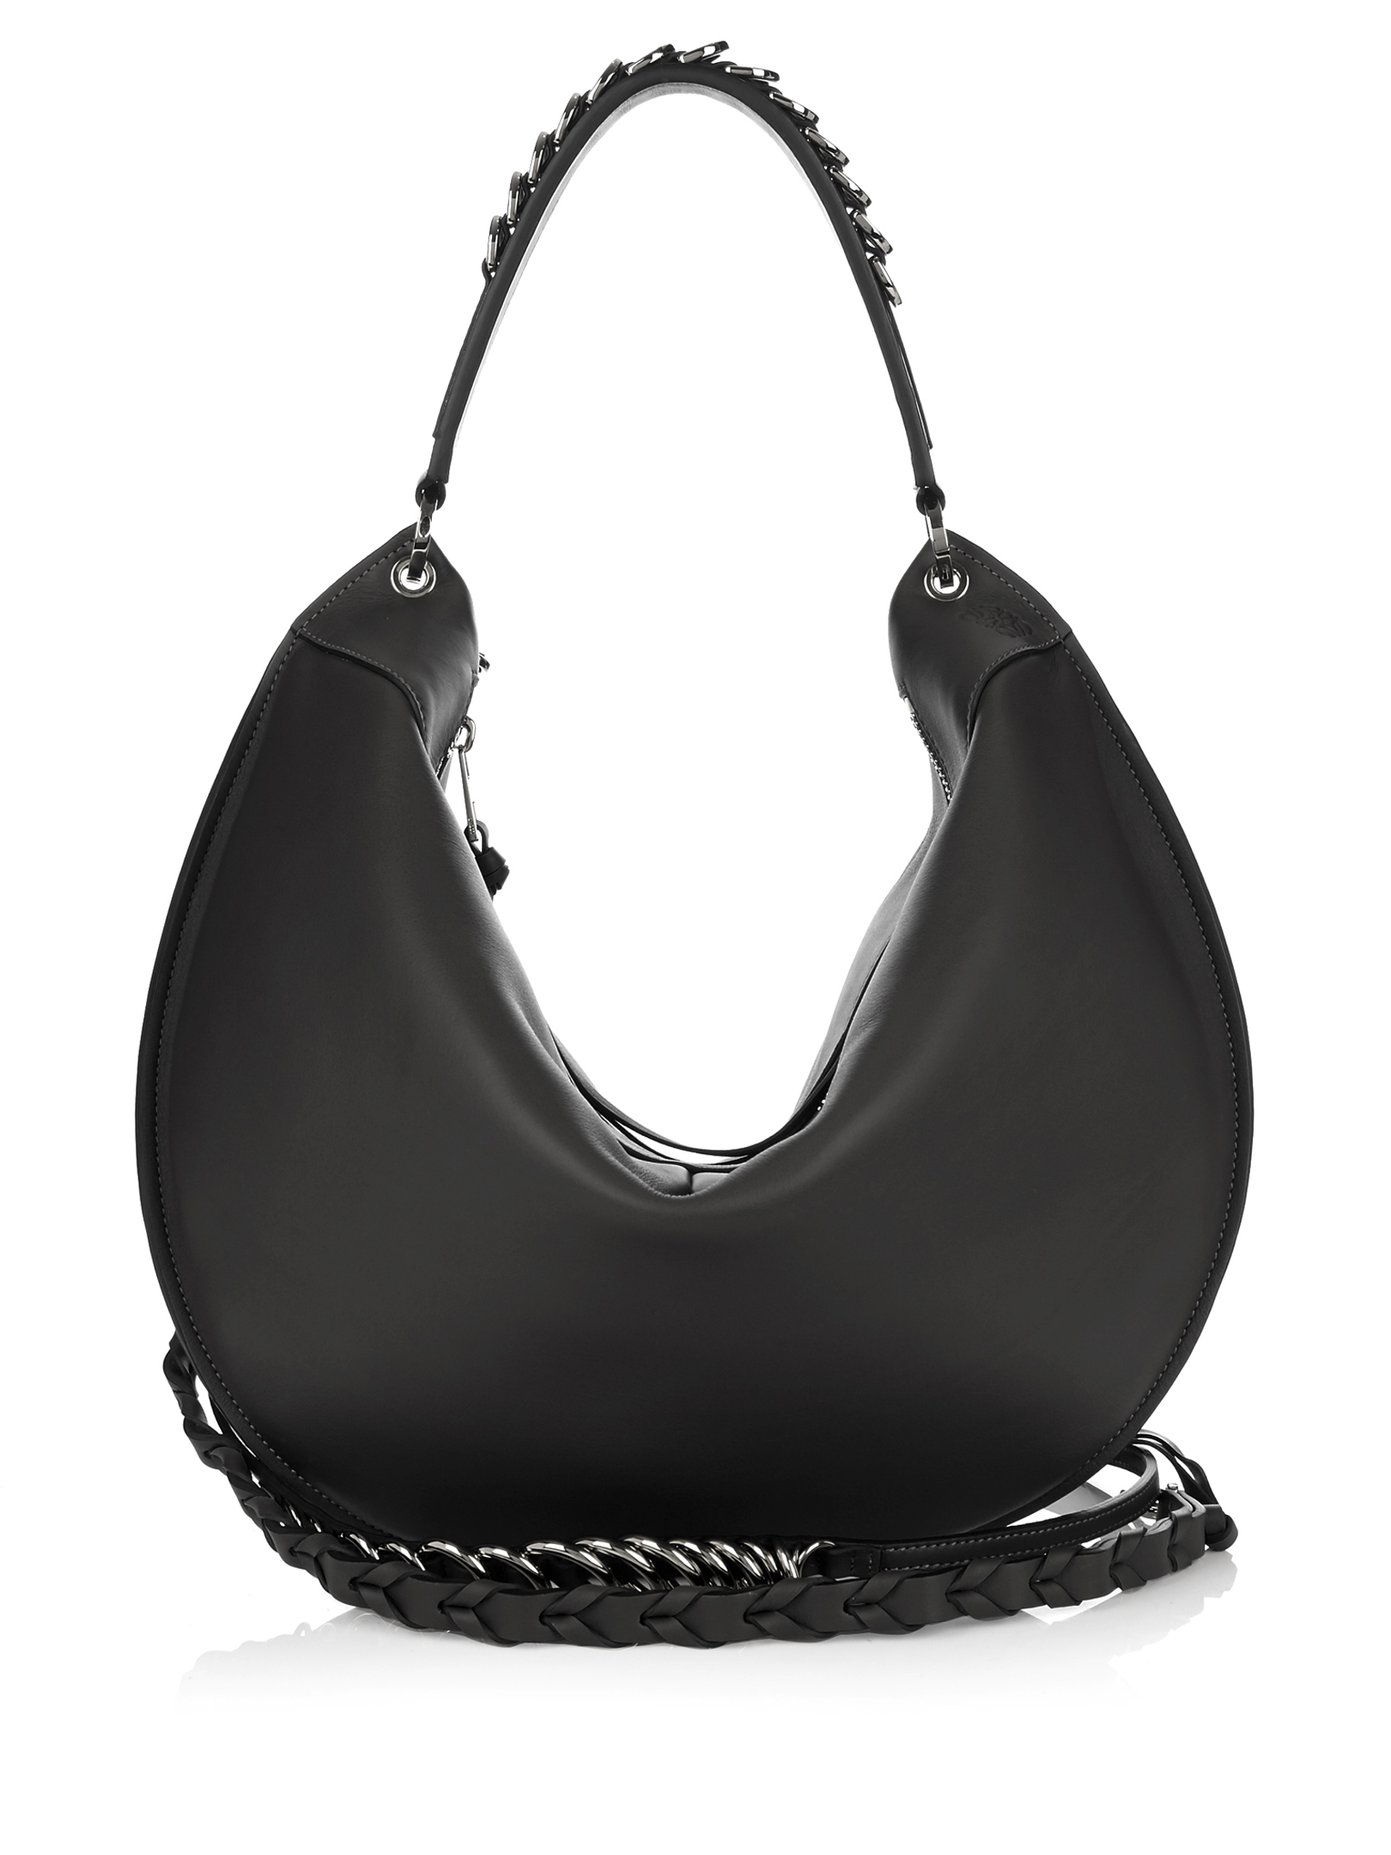 Fortune leather shoulder bag | Loewe 